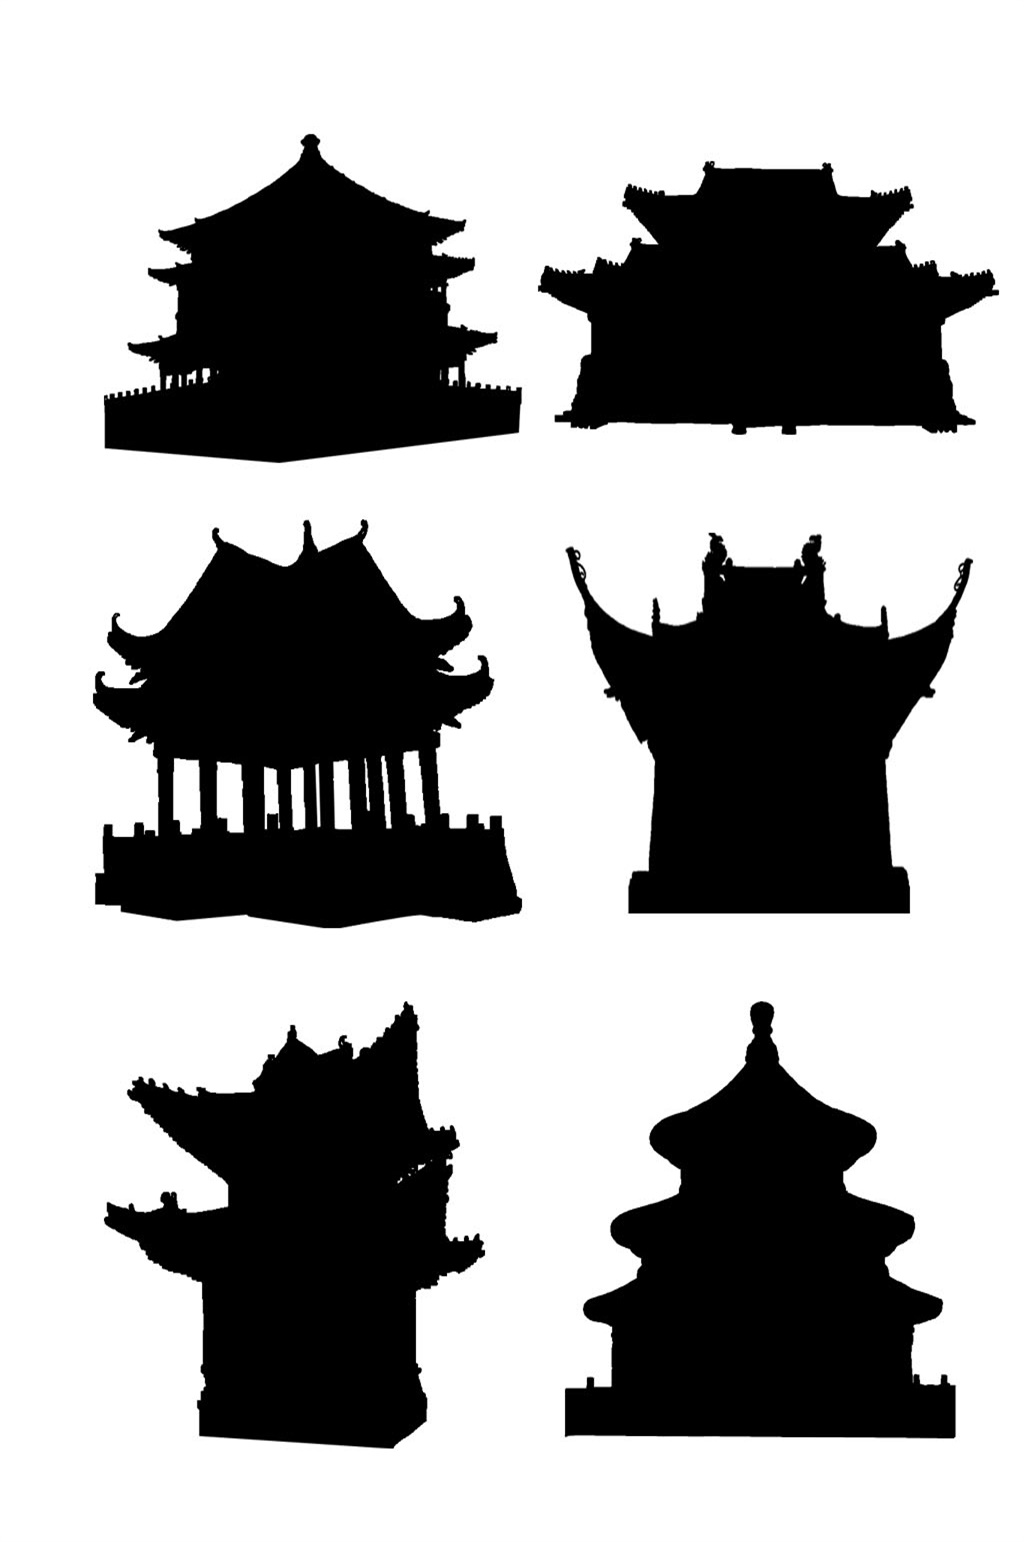 中国传统建筑剪影图片